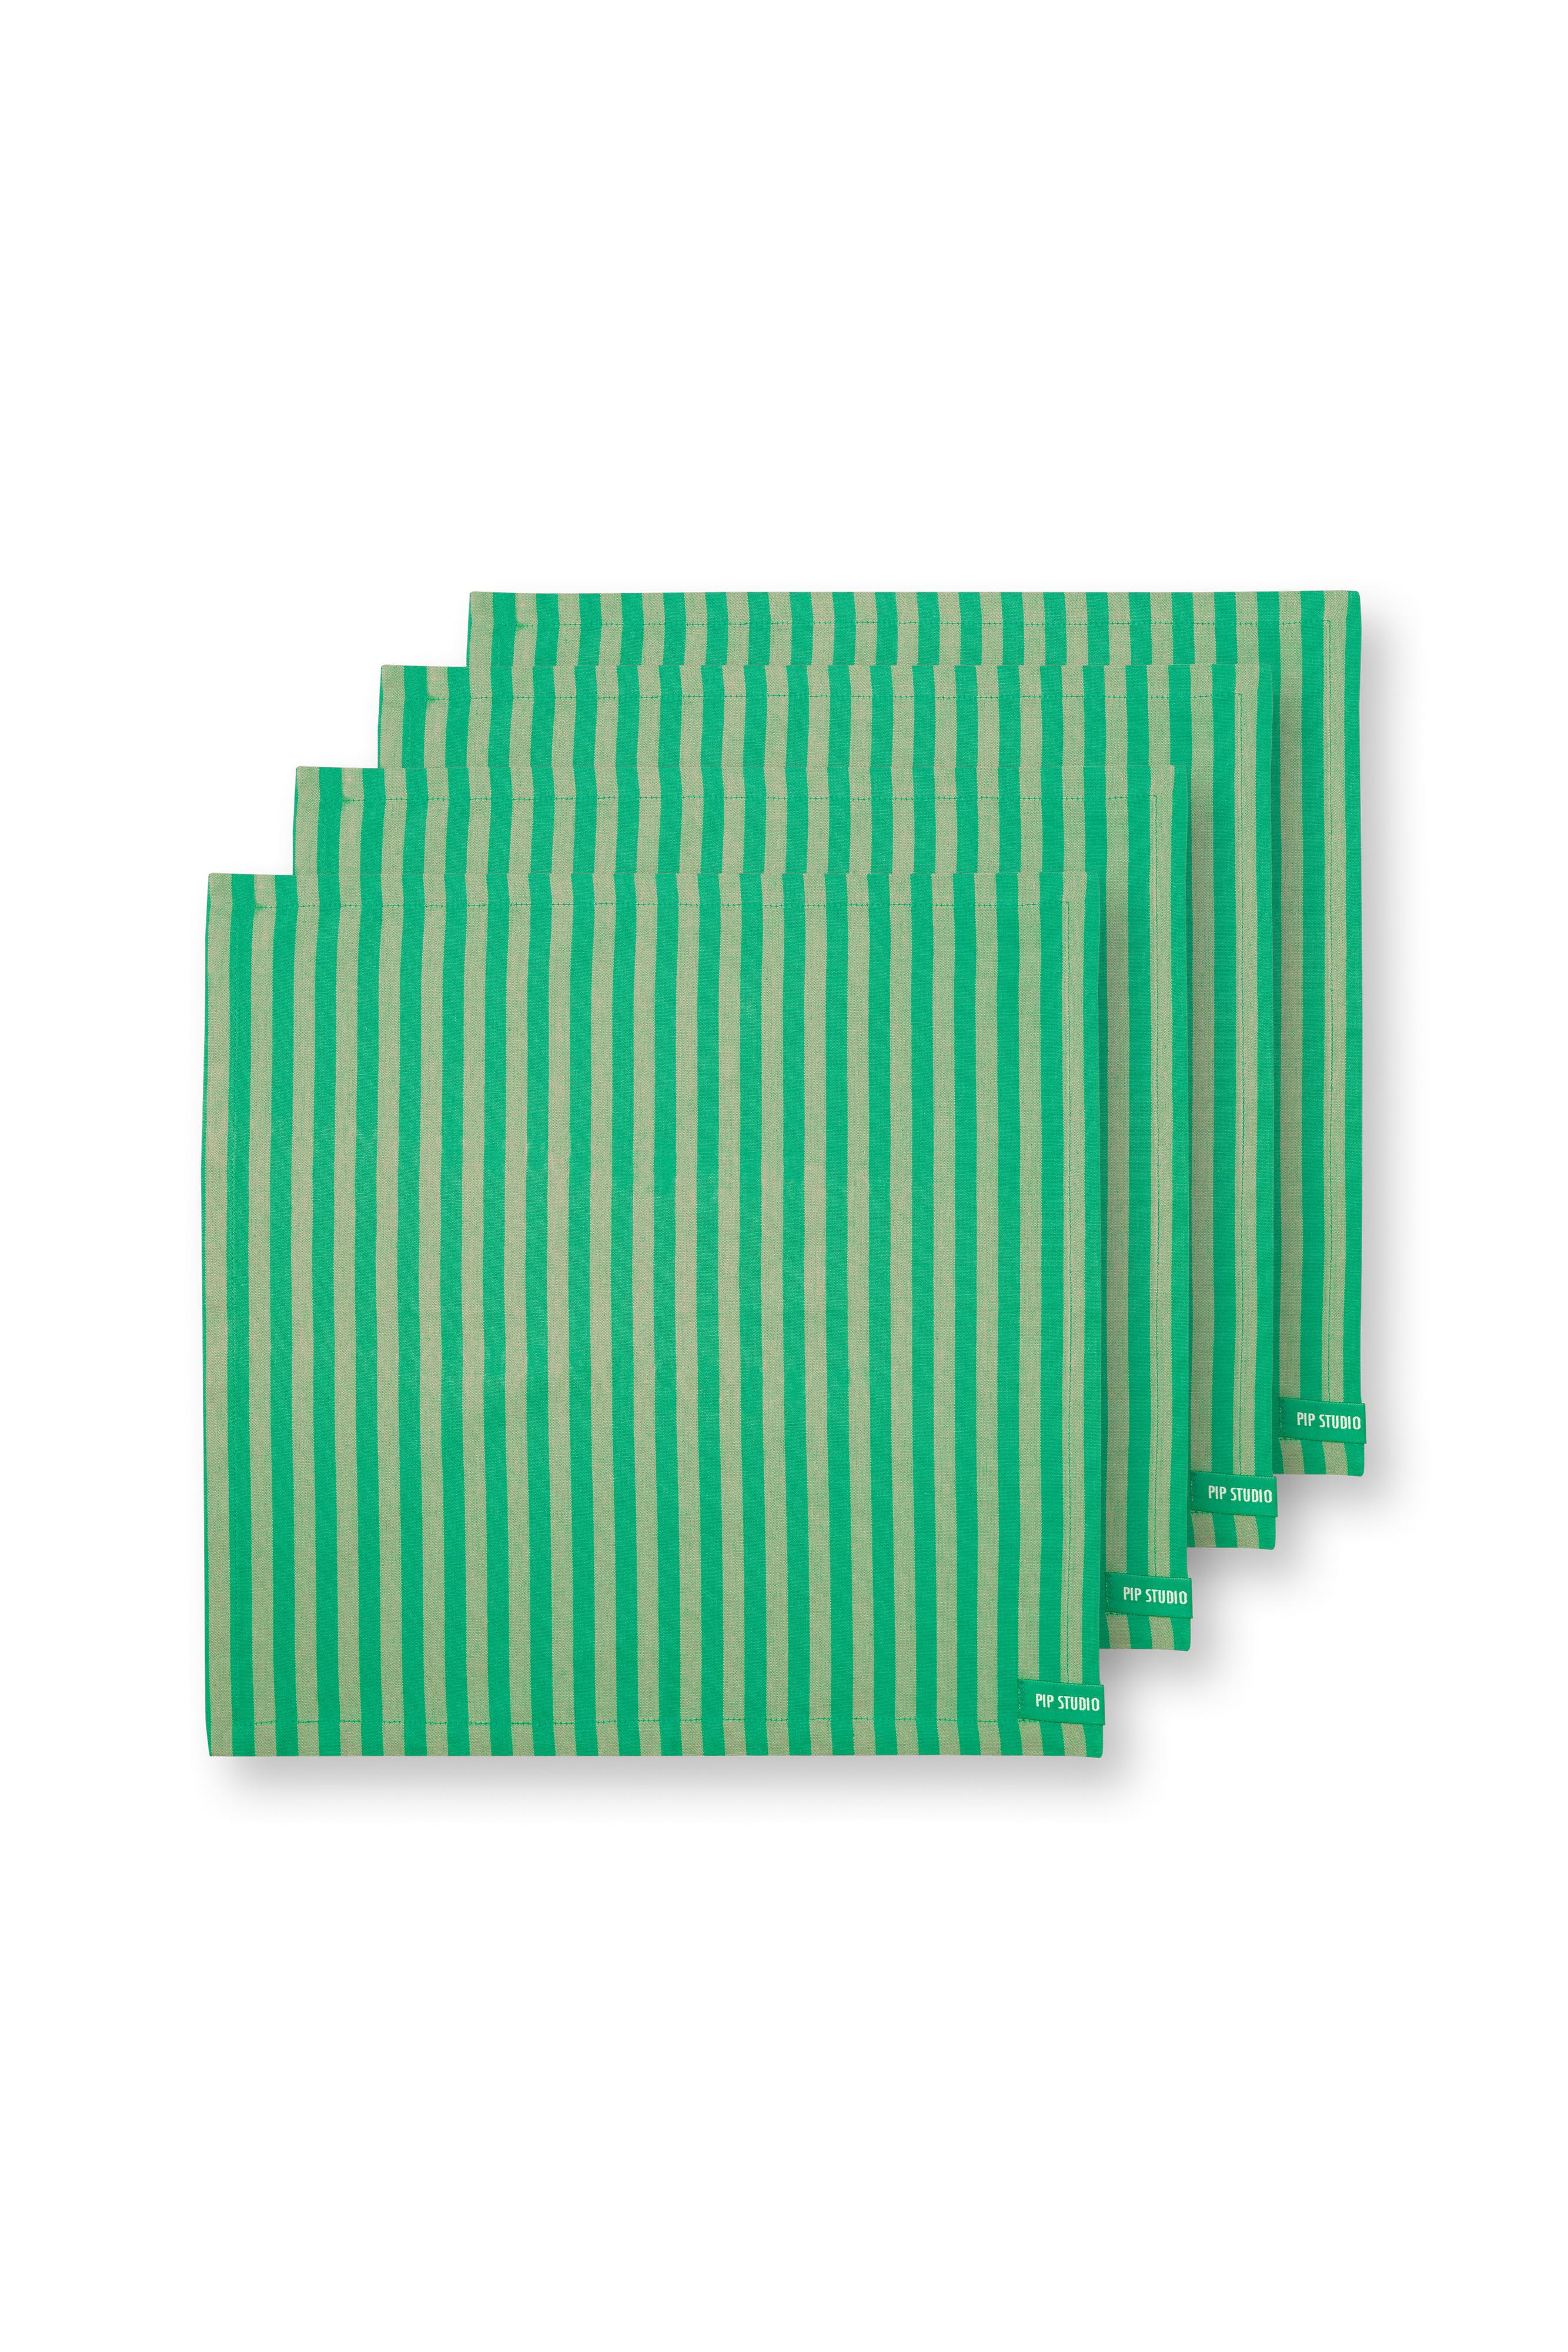 Set/4 Napkins Stripes Green 40x40cm Gift